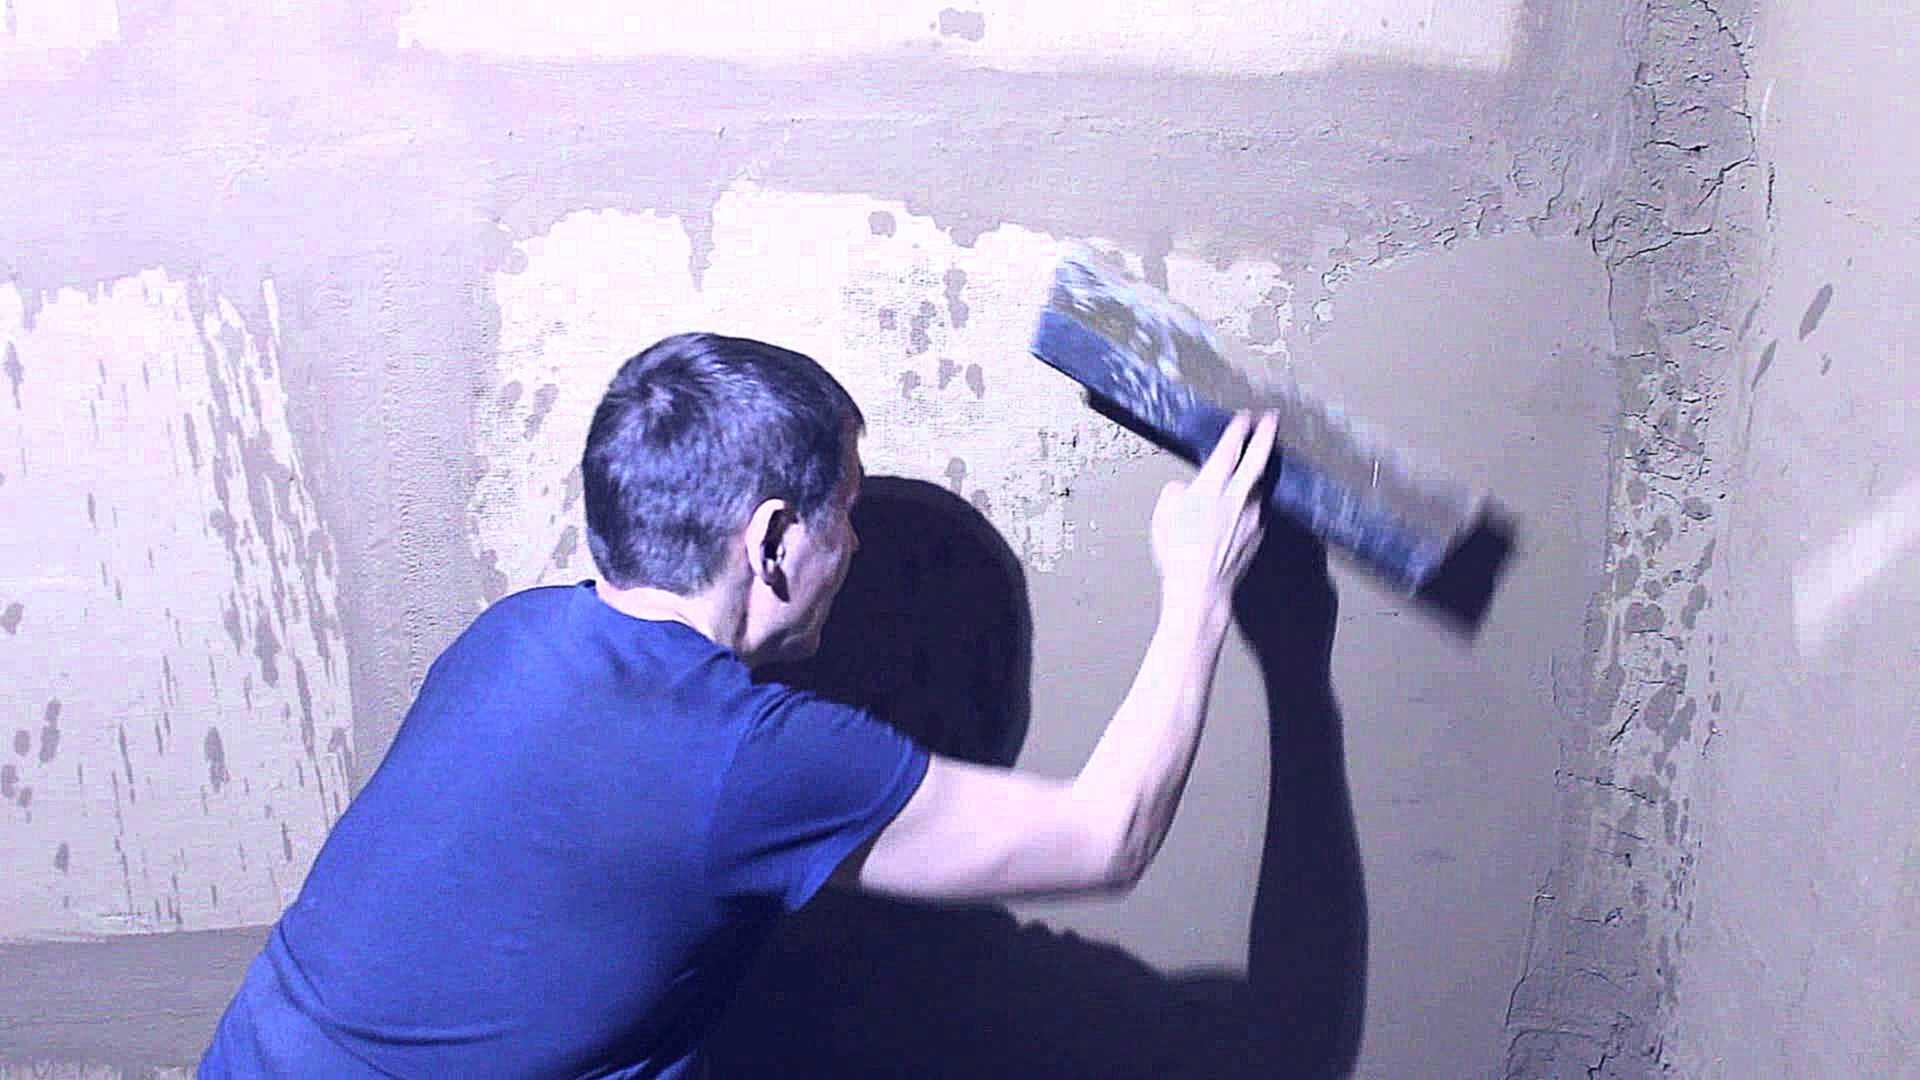 Как правильно зашпаклевать поверхность стен в помещении